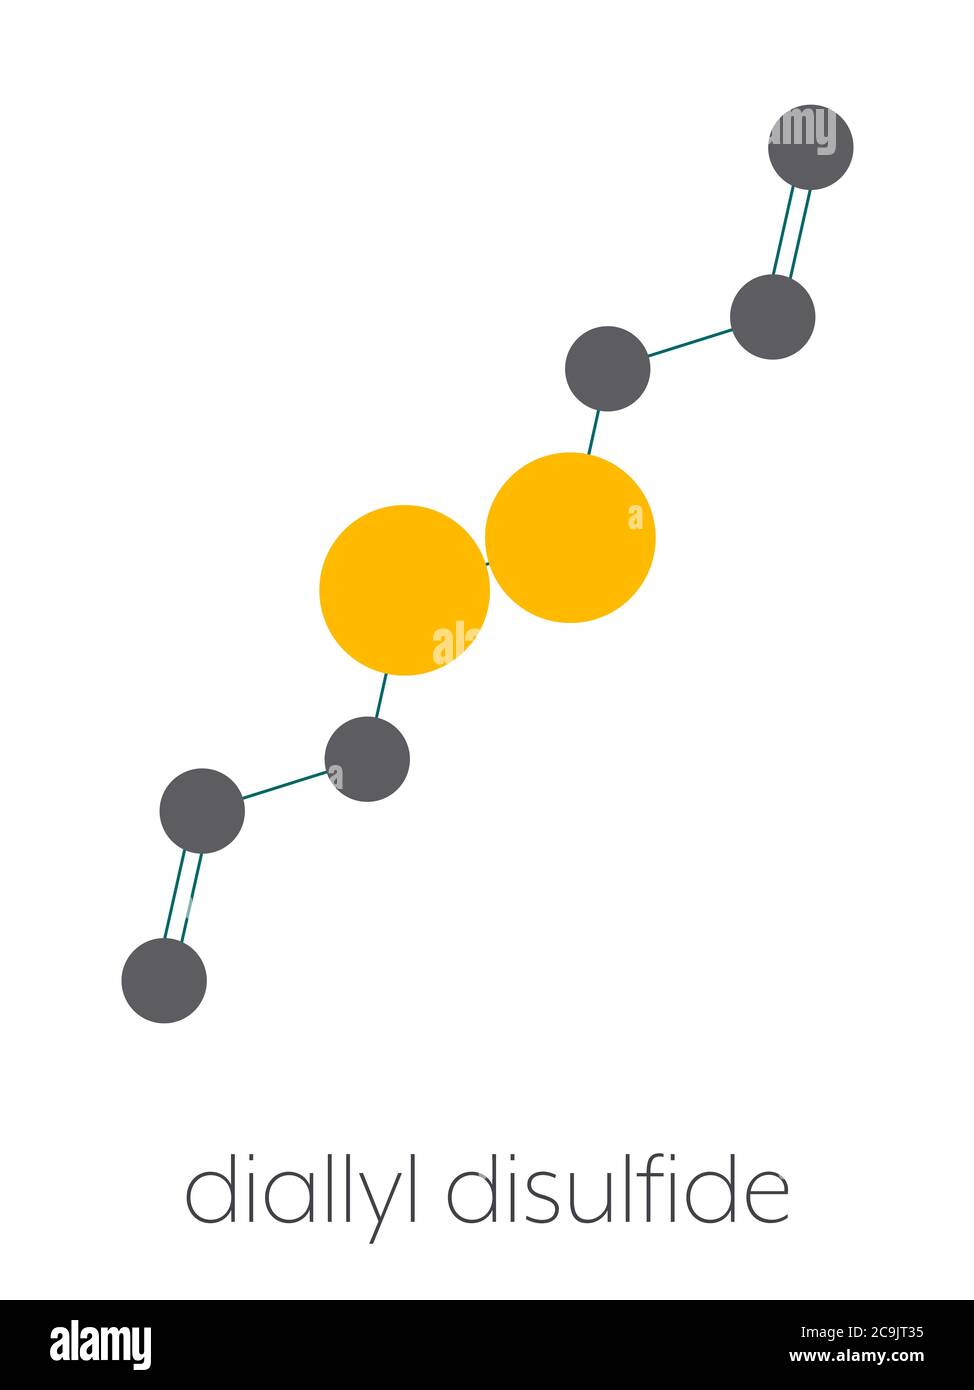 Diallyldisulfid Knoblauchmolekül. Eine der Verbindungen, die für Geschmack, Geruch und gesundheitliche Auswirkungen von Knoblauch verantwortlich sind. Stilisierte Skelettformel (chemisch Stockfoto